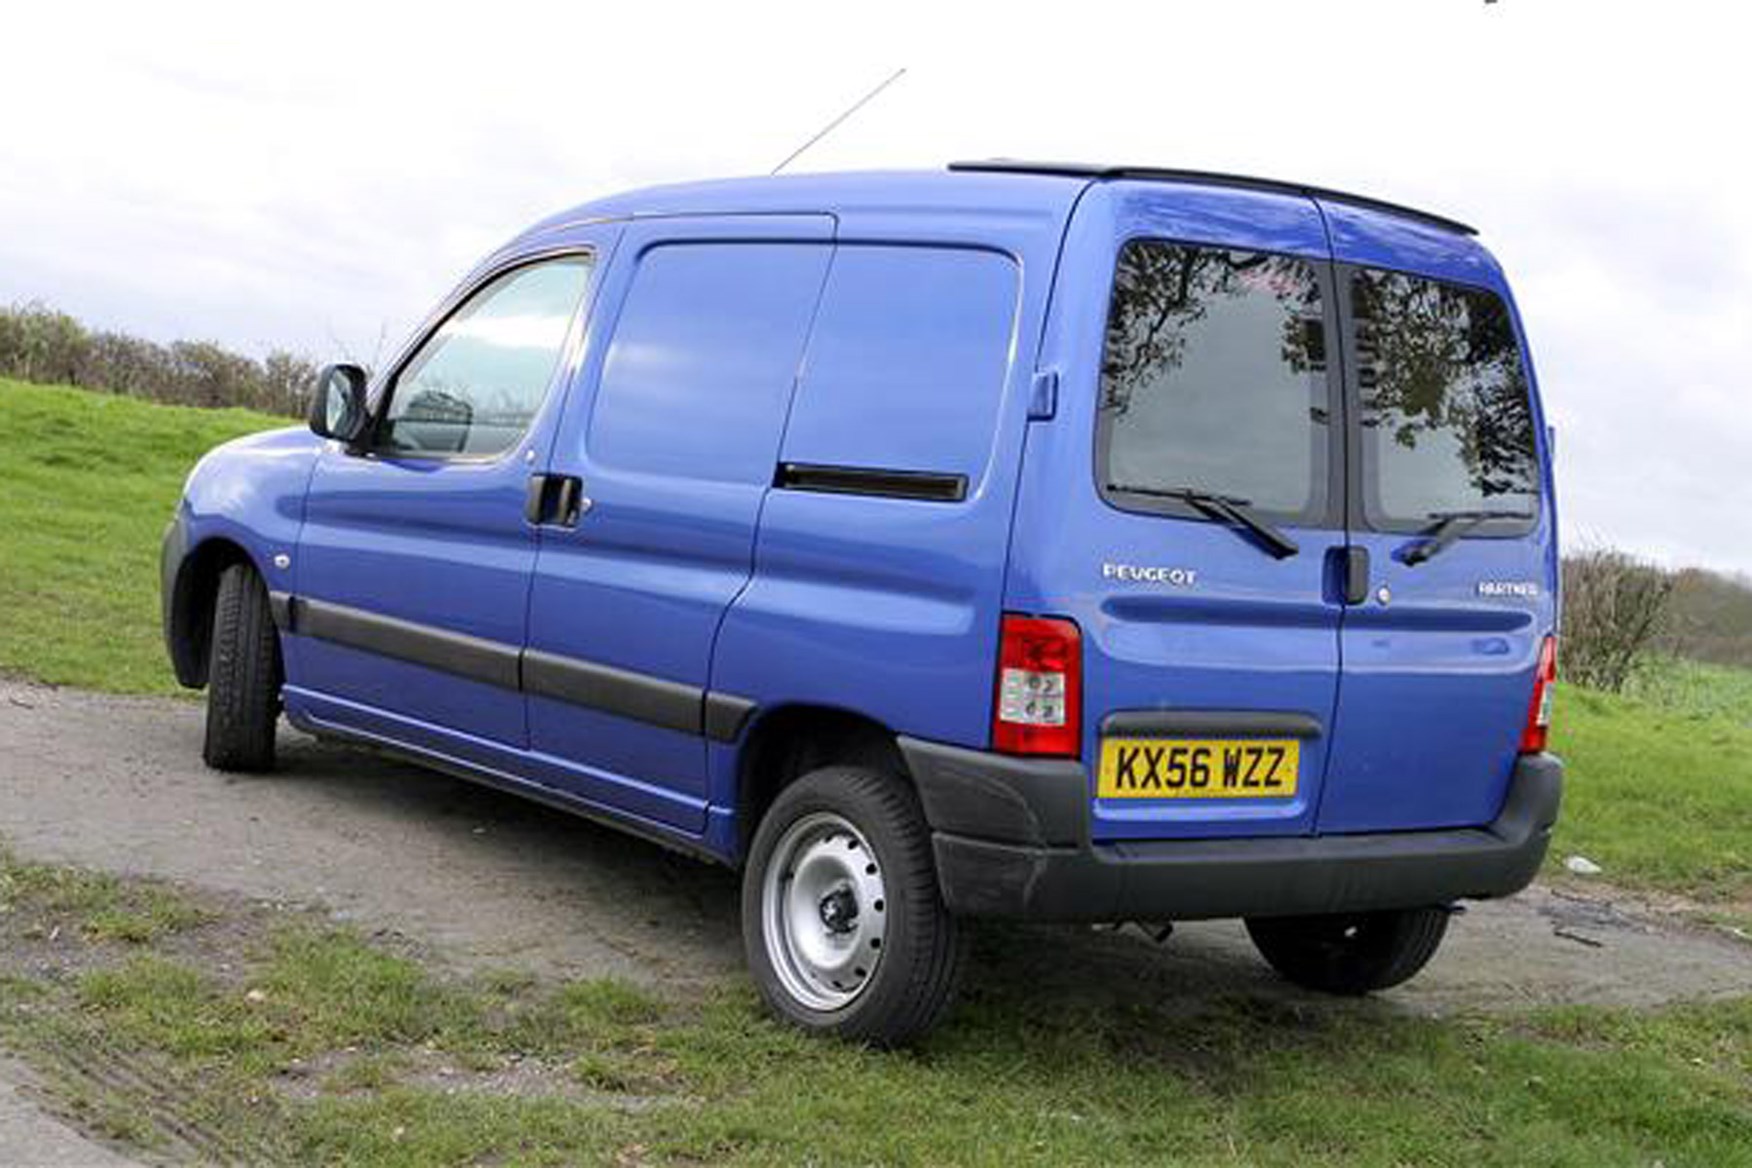 Peugeot Partner review on Parkers Vans - rear exterior